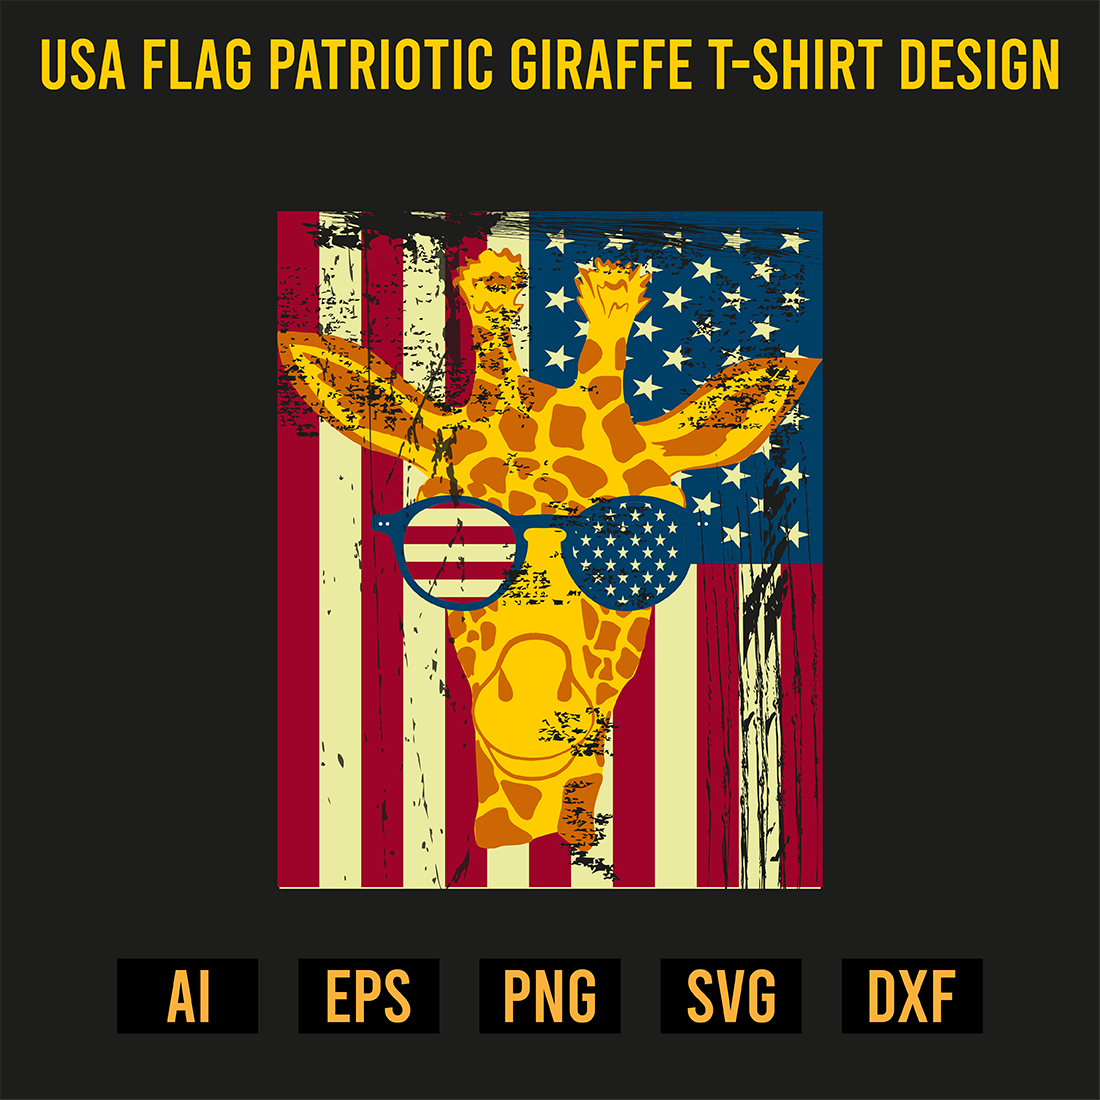 USA Flag Patriotic Giraffe T-Shirt Design preview image.